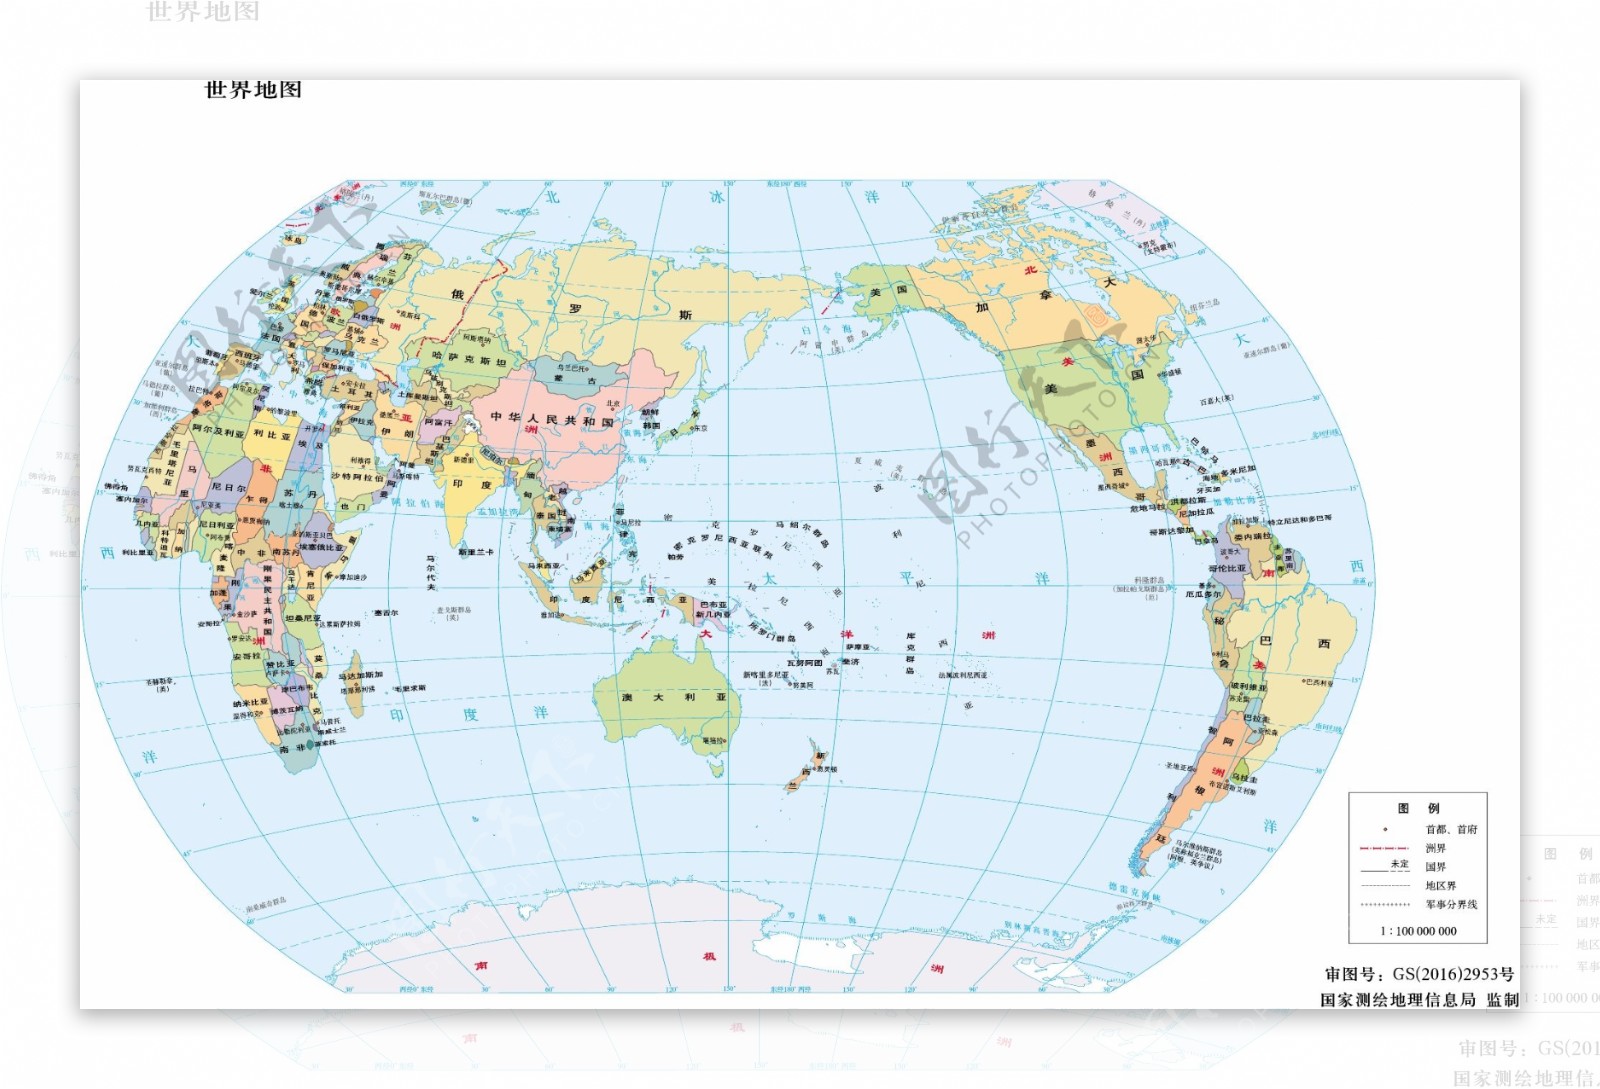 世界地形图11亿